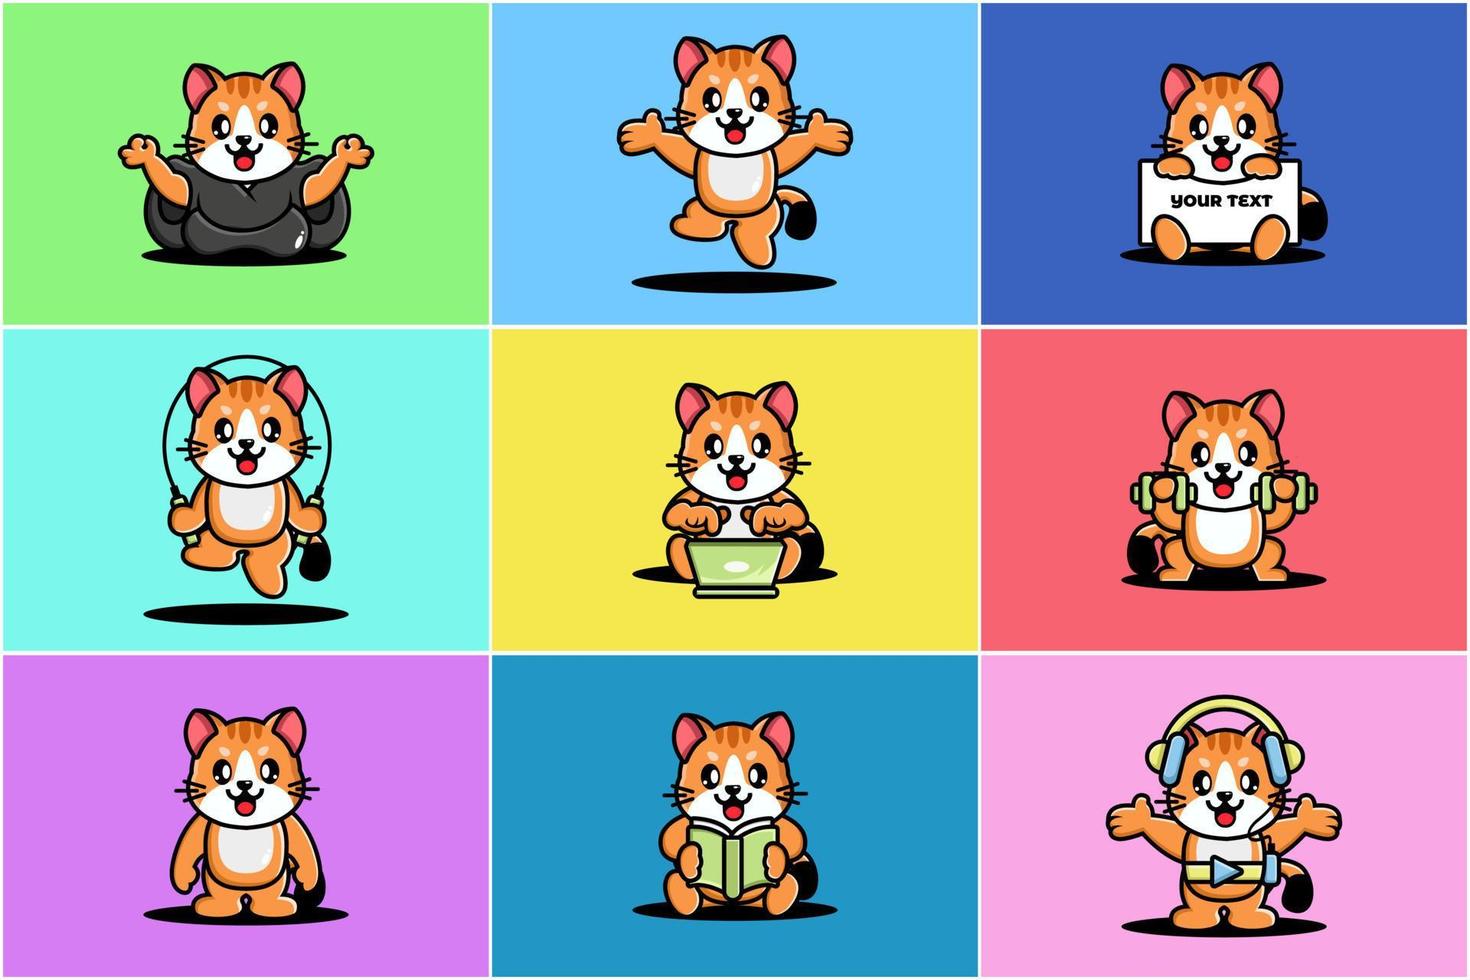 Cute cat character mascot design vector